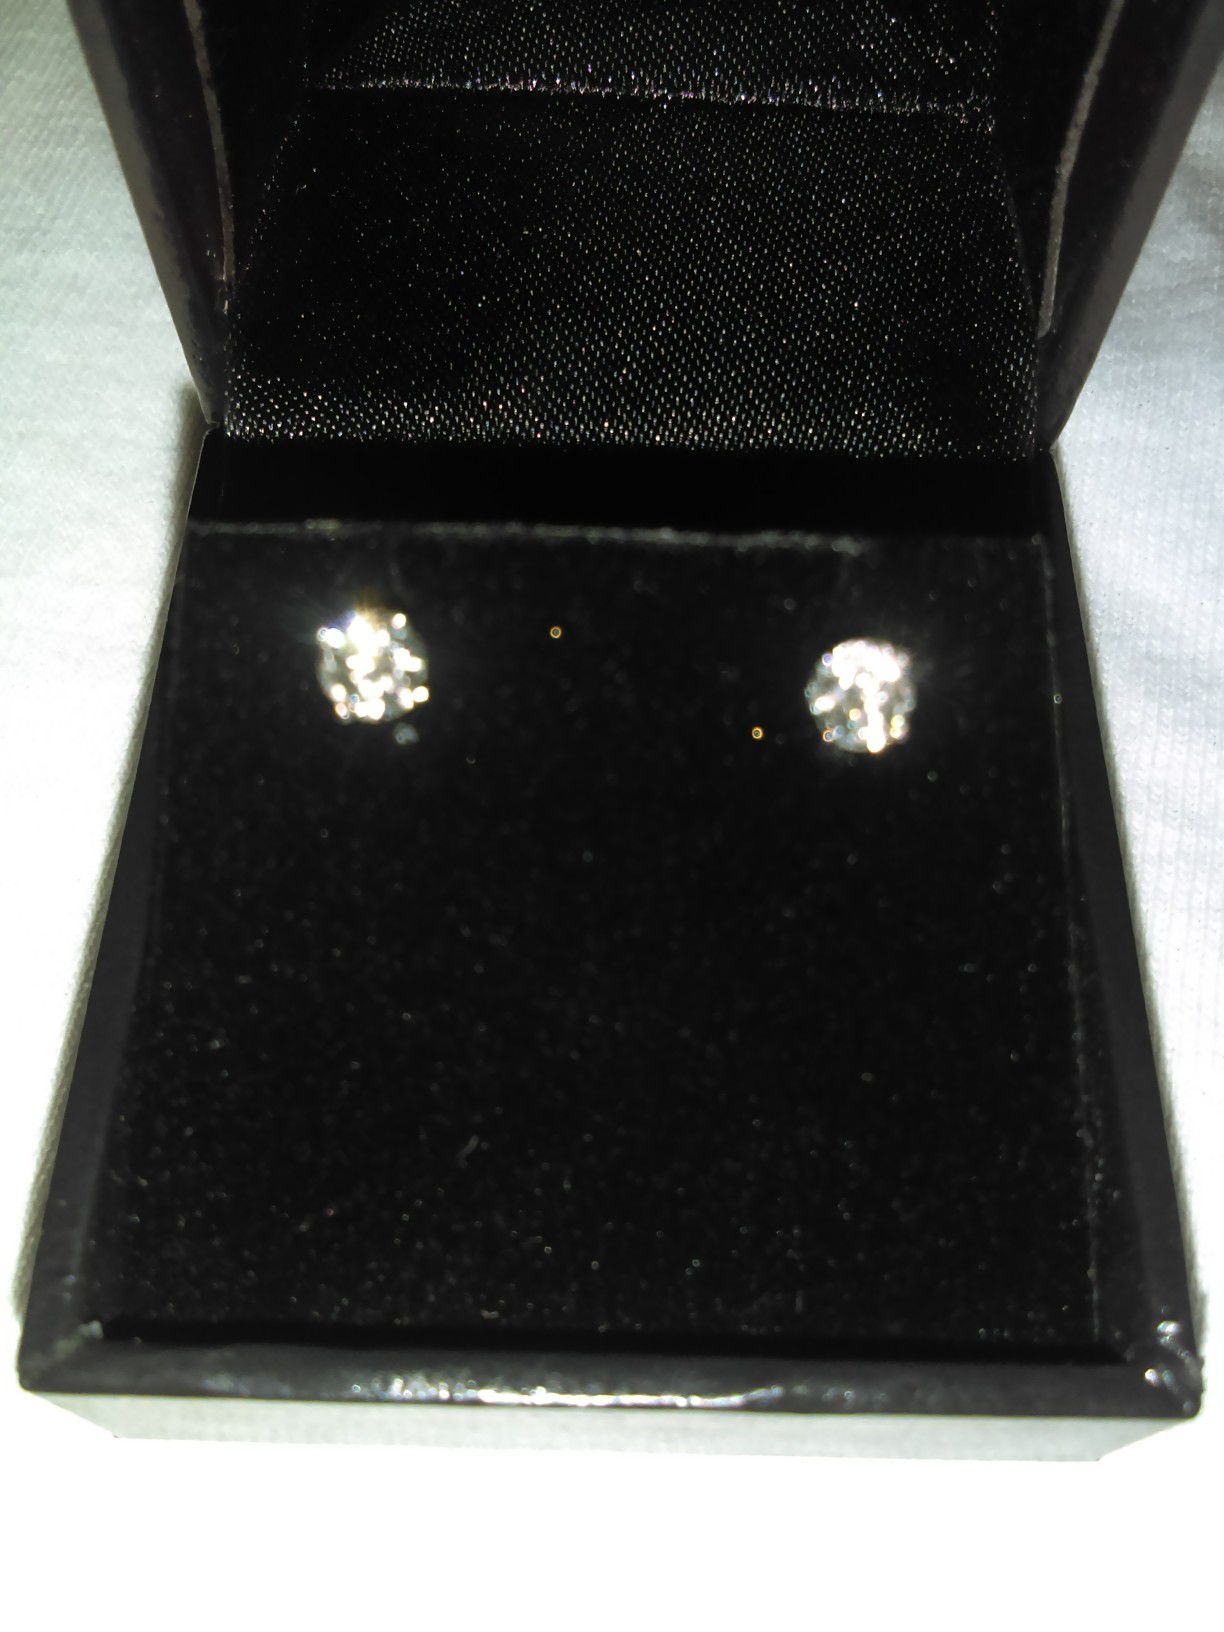 Beautiful 1/2 carat diamond earrings!